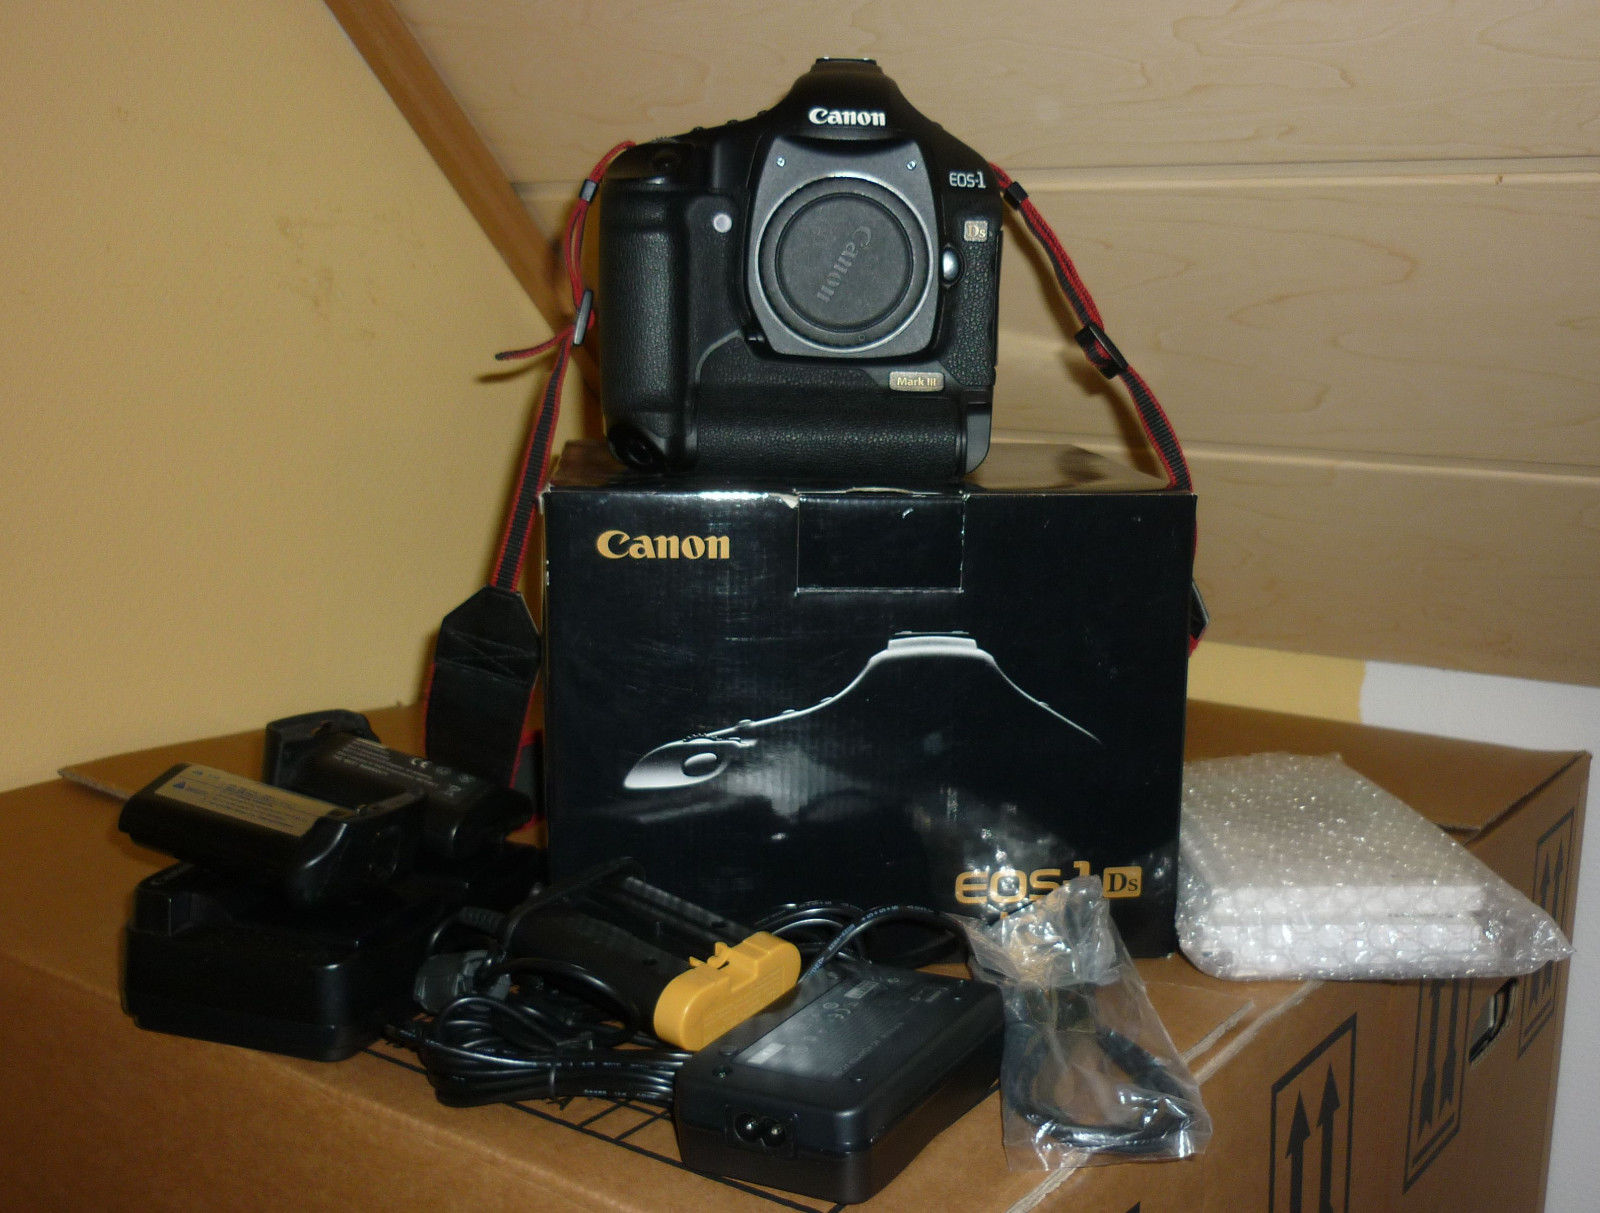 Canon EOS 1Ds Mark III 21.1MP Digitalkamera - fast wie neu, mit OVP, nur 2122 Au